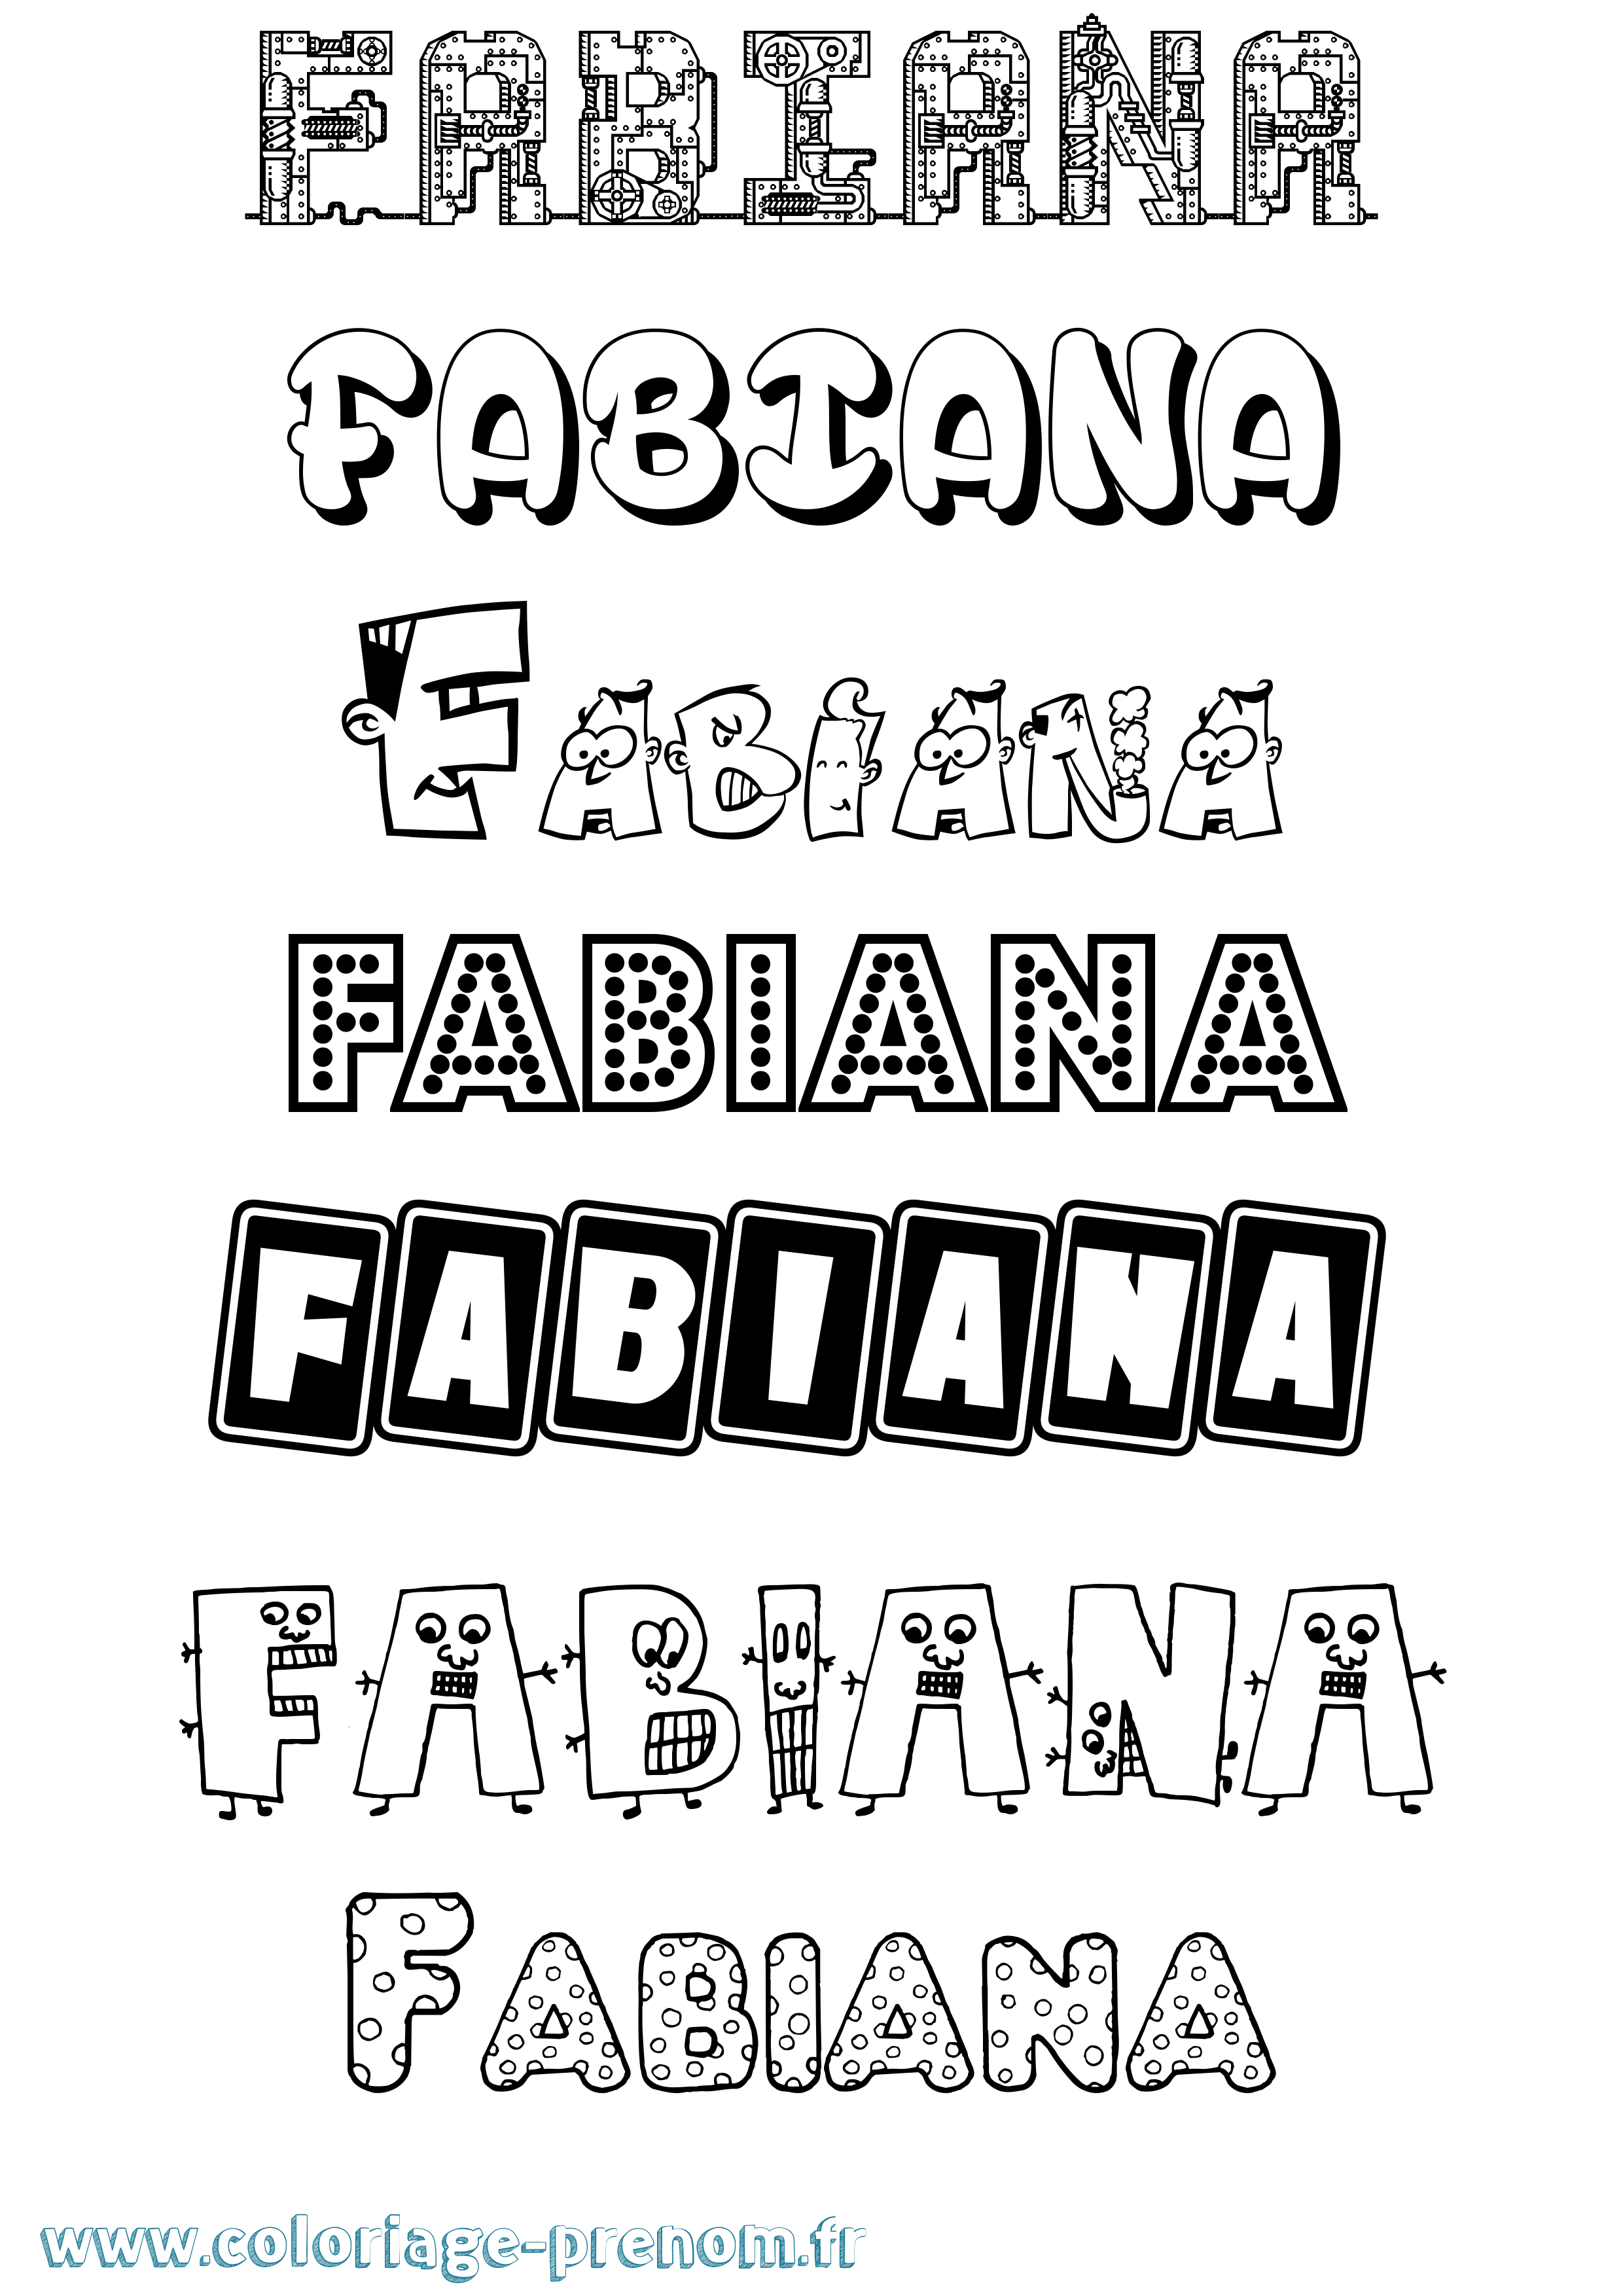 Coloriage prénom Fabiana Fun